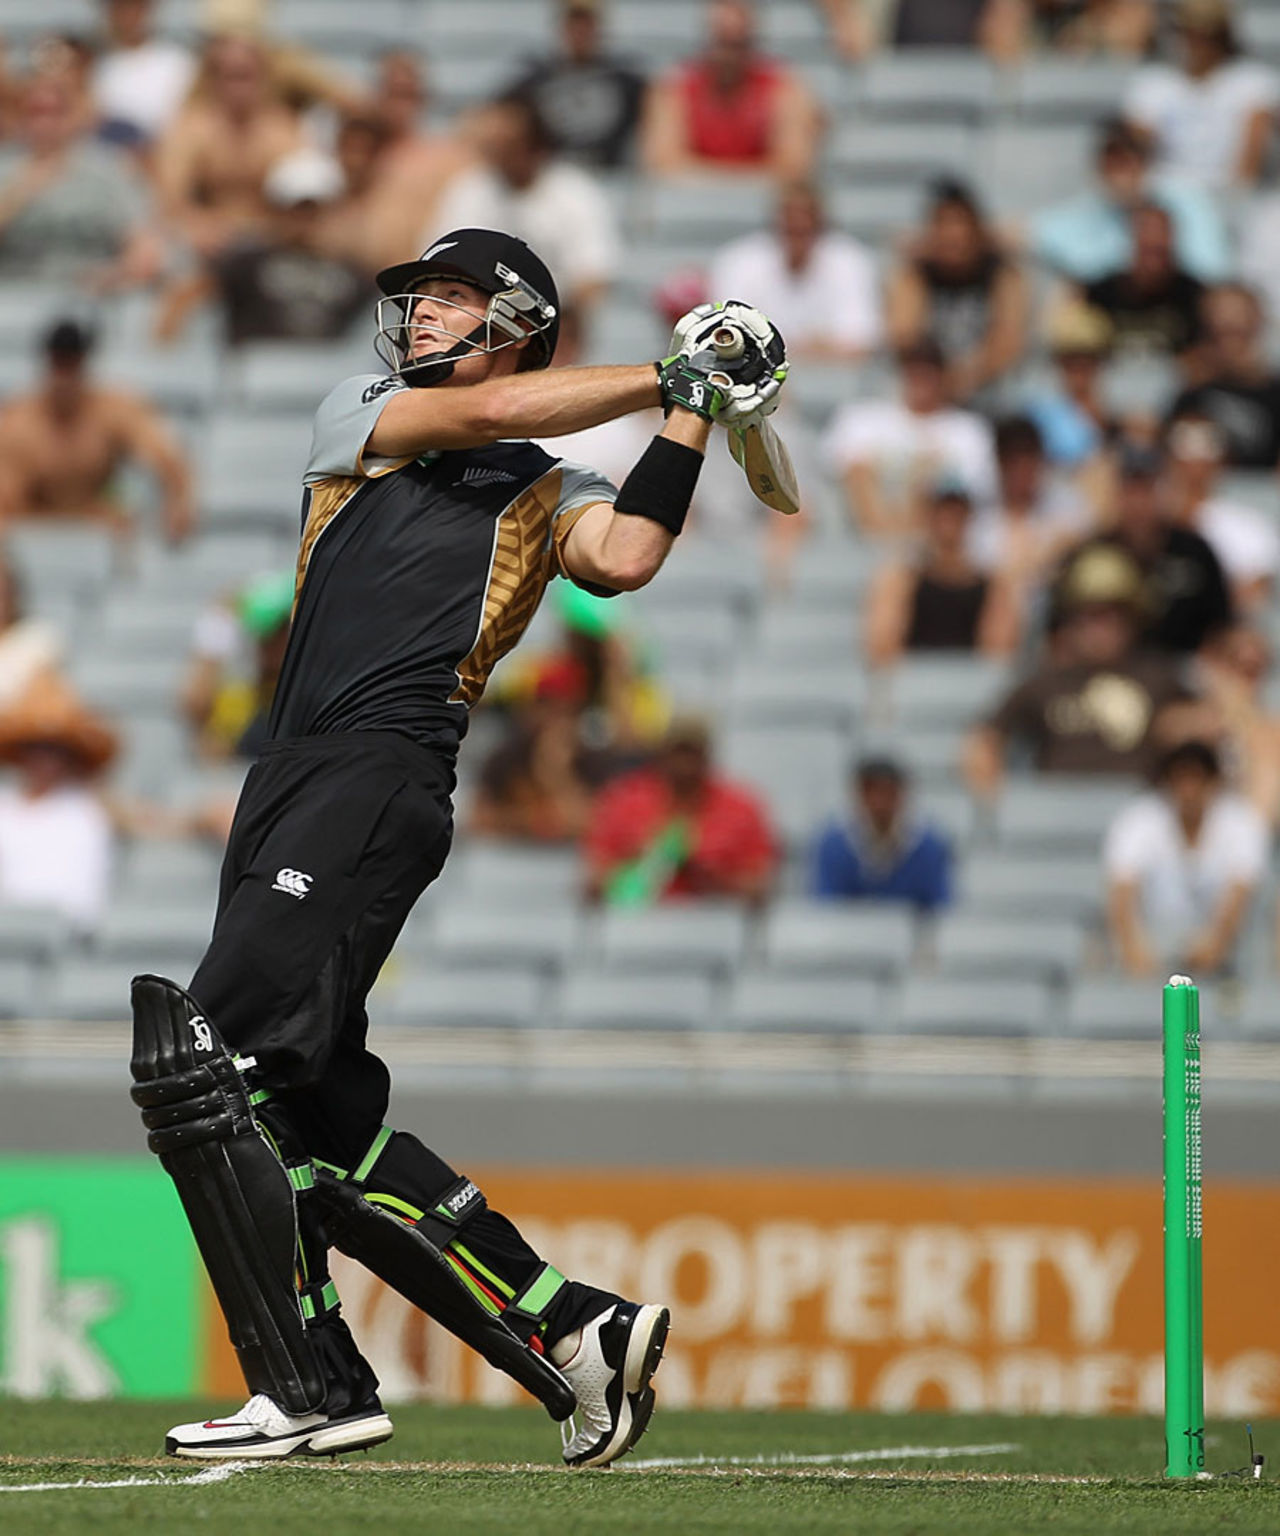 Martin Guptill blasted 54 off just 29 balls, New Zealand v Pakistan, 1st Twenty20, Auckland, December 26, 2010